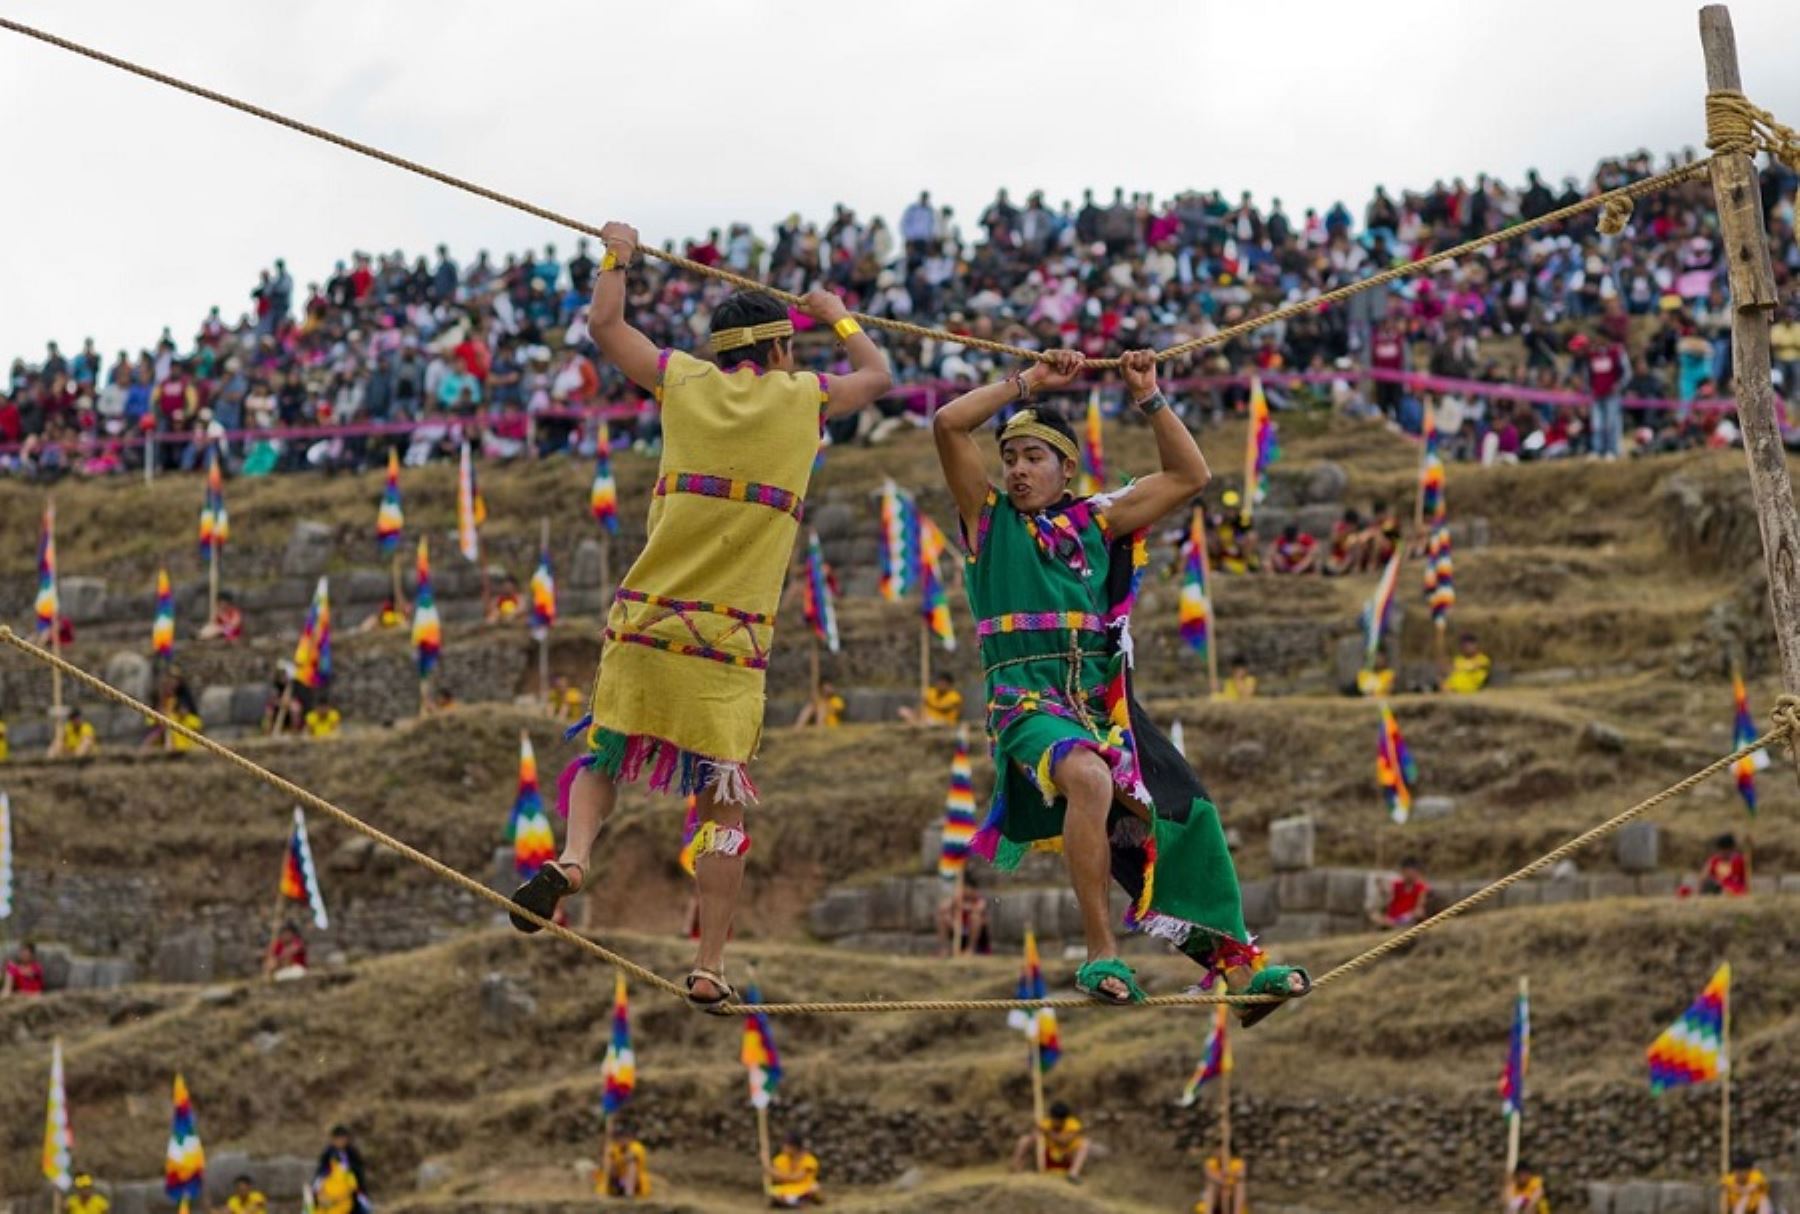 La Ciudad Imperial volverá a protagonizar, este domingo 18 de setiembre, una de las festividades más arraigadas de la civilización inca: el Warachicuy o ritual del inicio de la madurez de los jóvenes para convertirse en ciudadanos adultos y guerreros al servicio del ejército imperial del Tahuantinsuyo.  Foto: Perú Travel